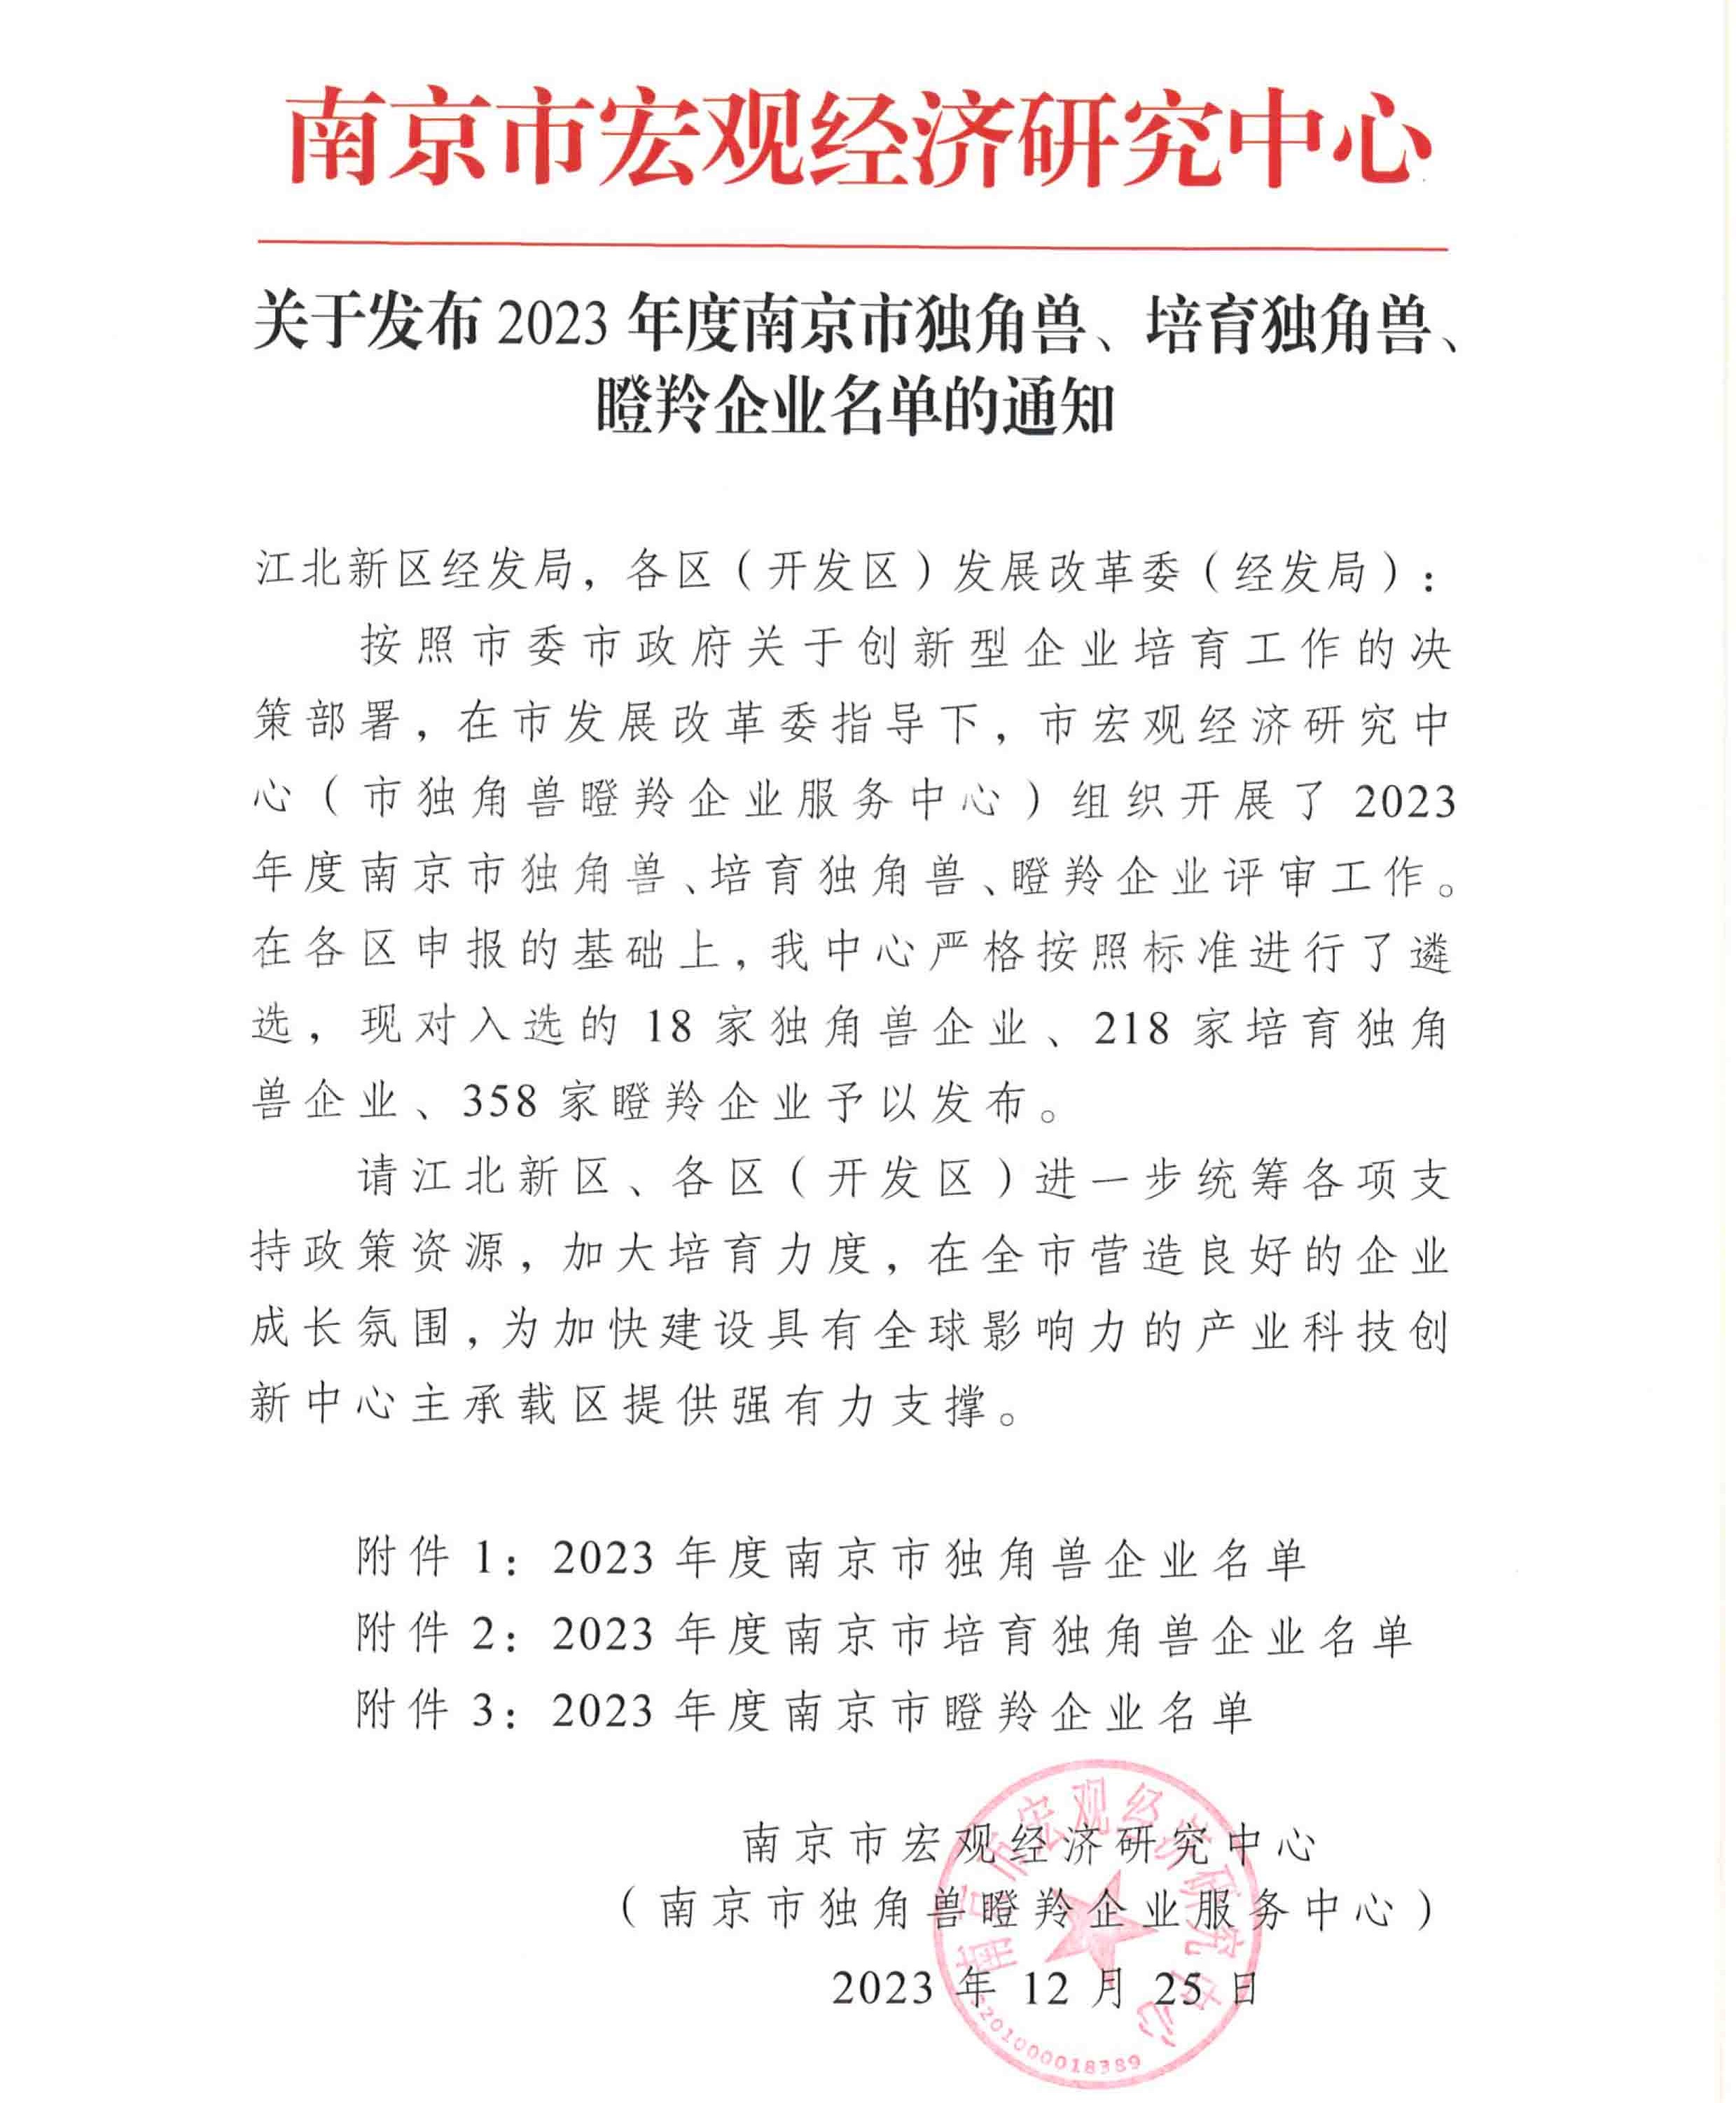 博纳科技连续三年入选“南京市瞪羚企业”